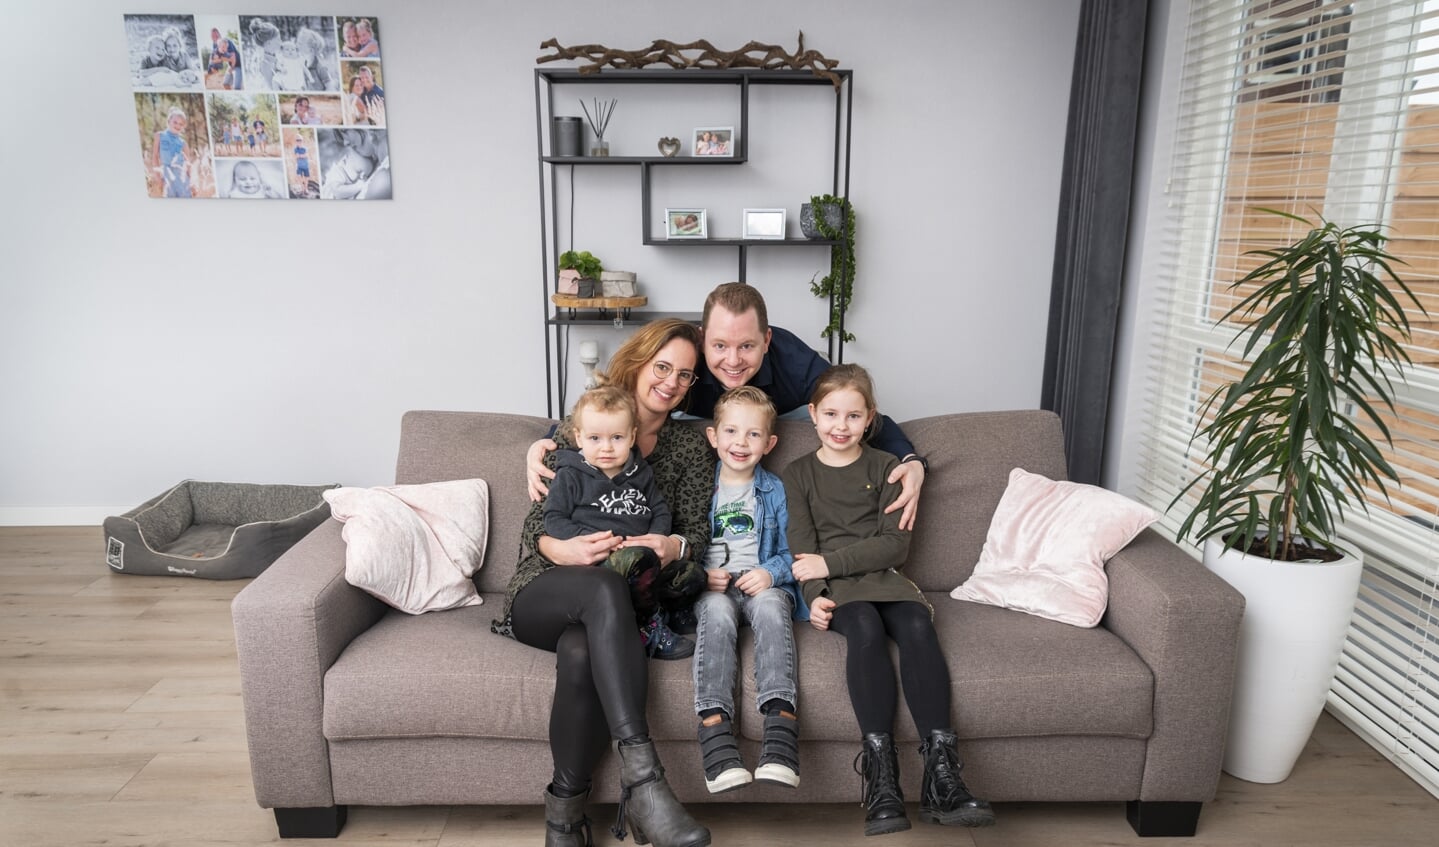 Conja en Robin met hun kinderen Linsey (9), Jelle (6) en Esmee (bijna 2).